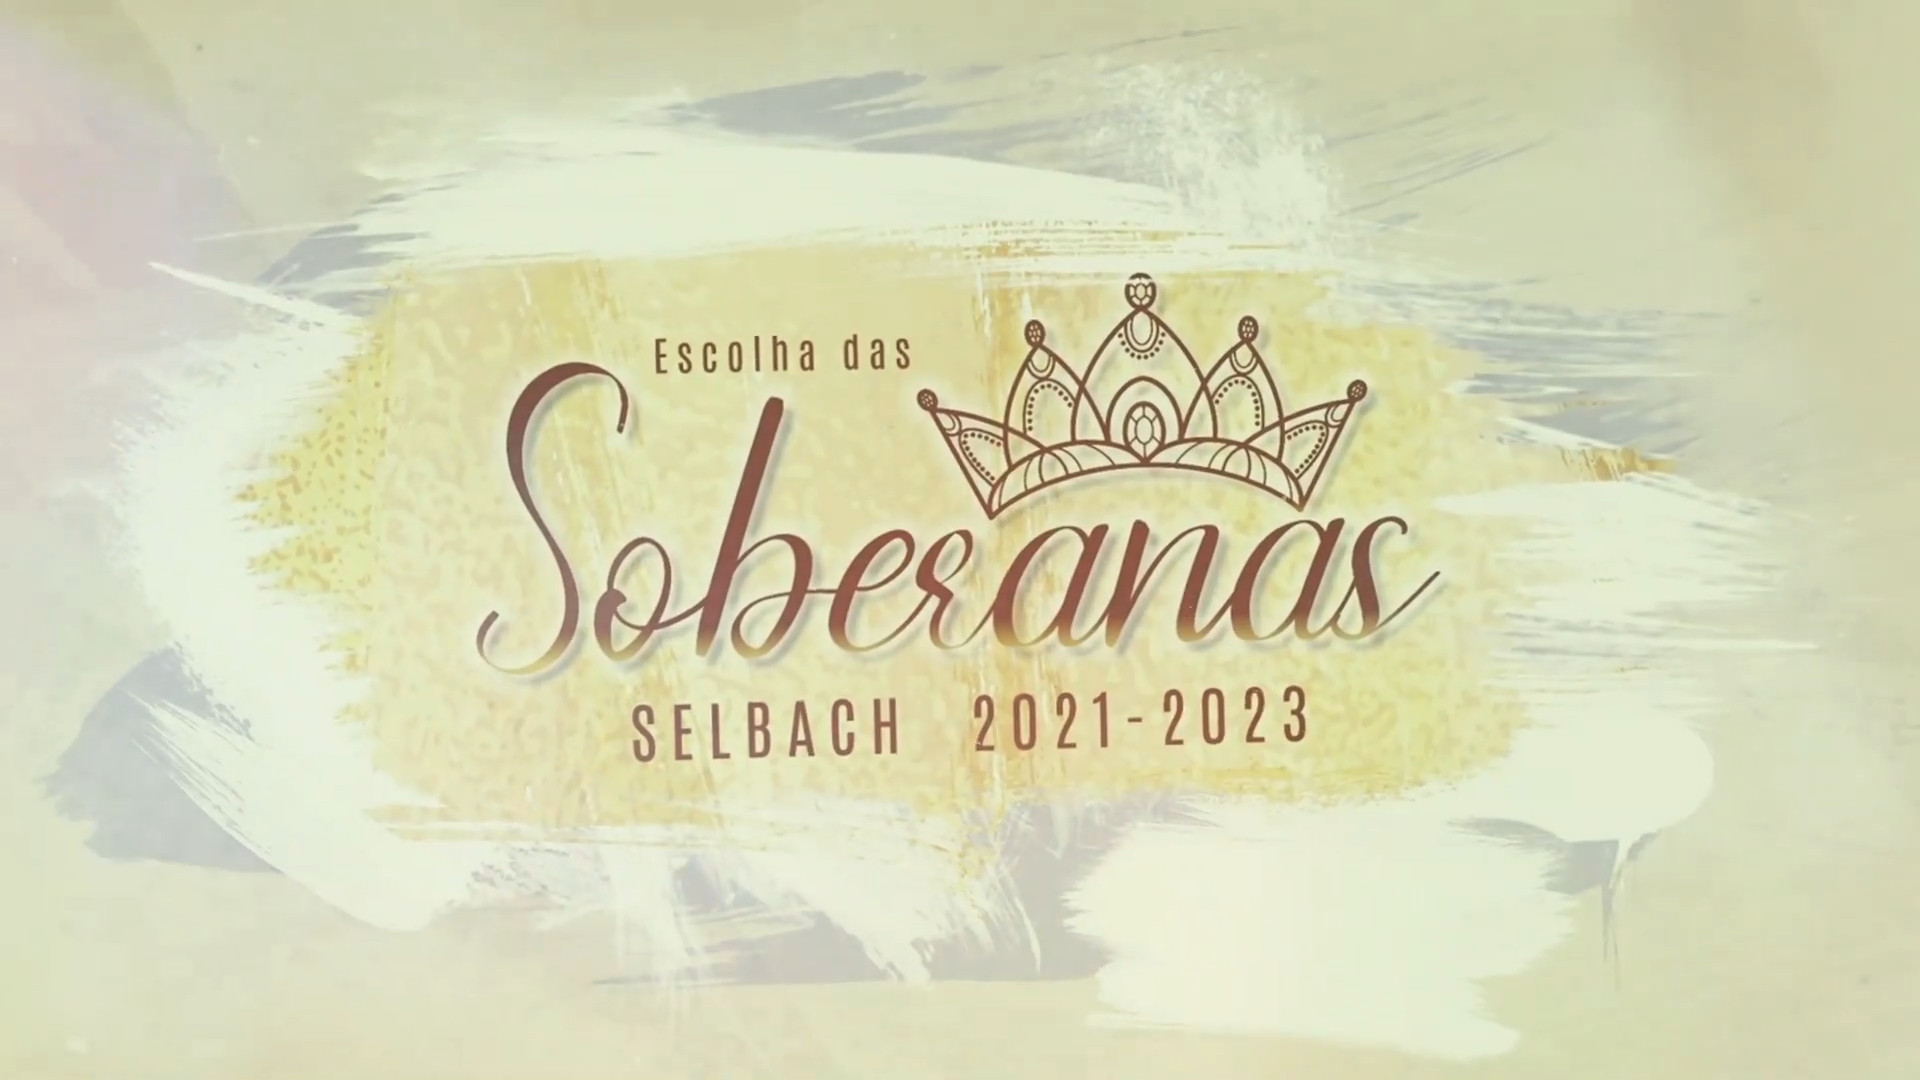 Escolha das Soberanas do Município de Selbach/RS – 2021/2023